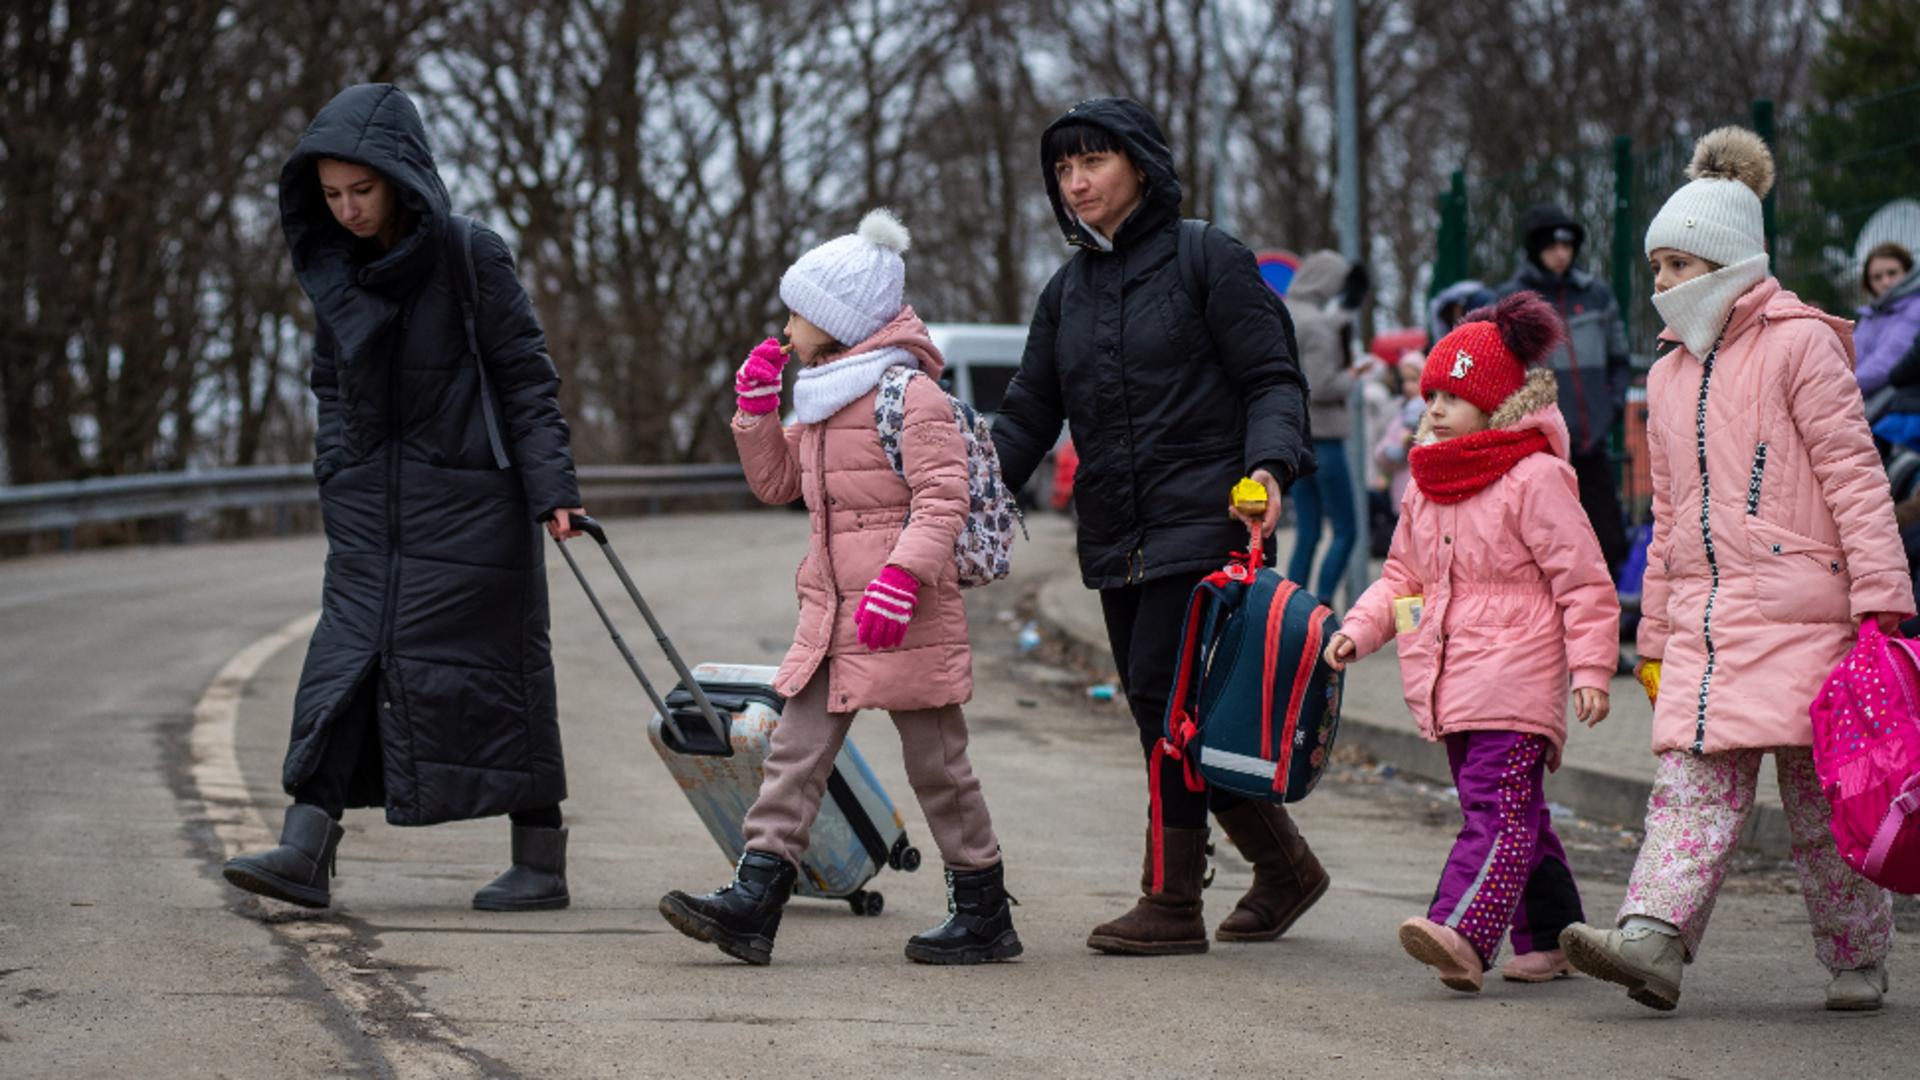 Măsuri pentru a proteja copii refugiaţi în România / Foto: Profi Media